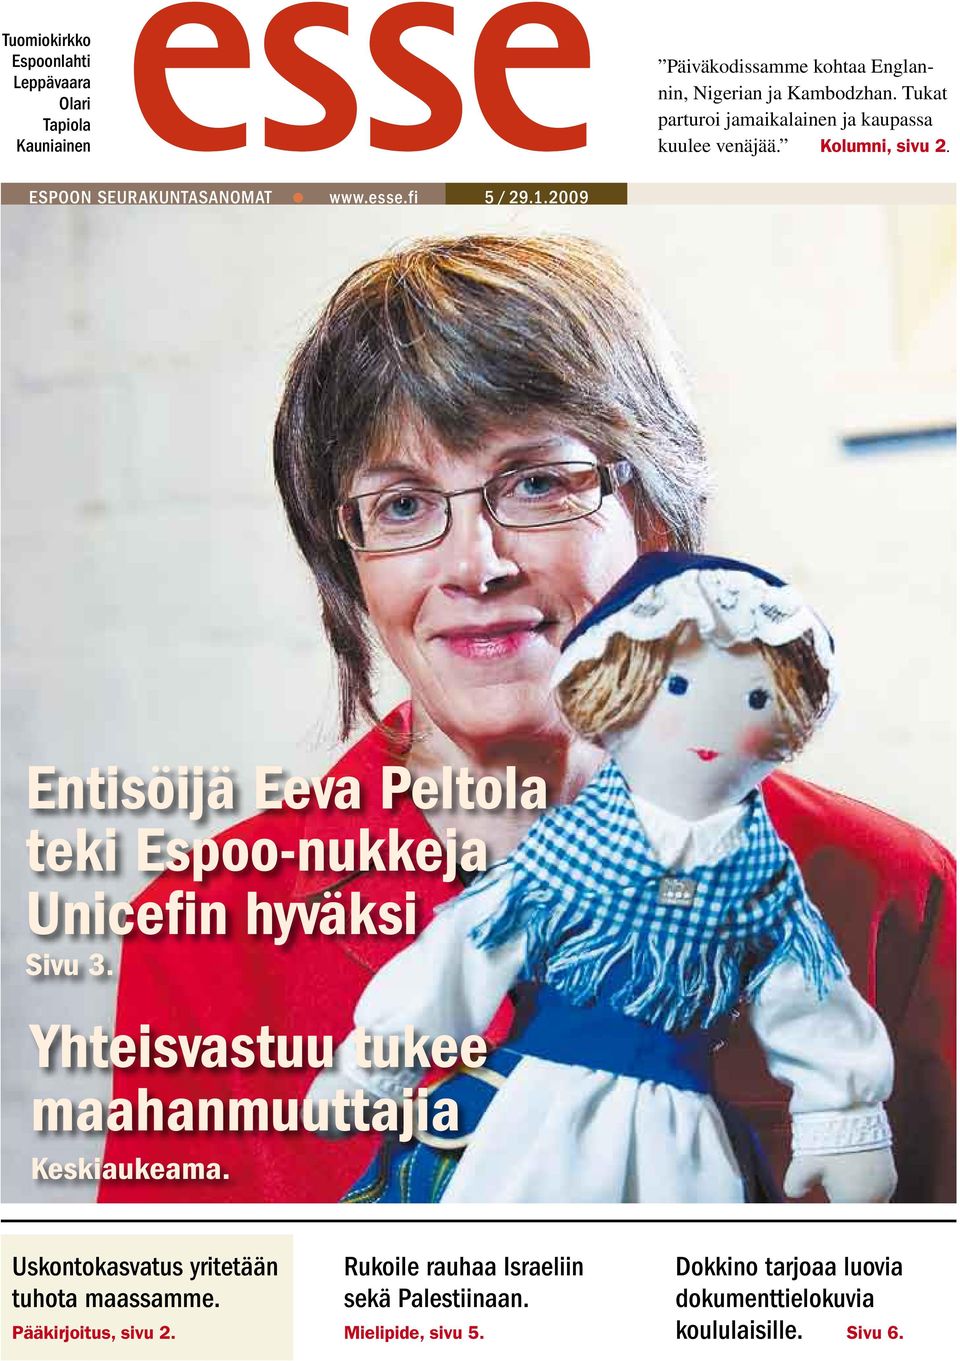 Espoo-nukke Unicefin hyväksi Sivu 3 Yhteisvastuu tukee maahanmuuttajia Keskiaukeama Uskontokasvatus yritetään tuhota maassamme